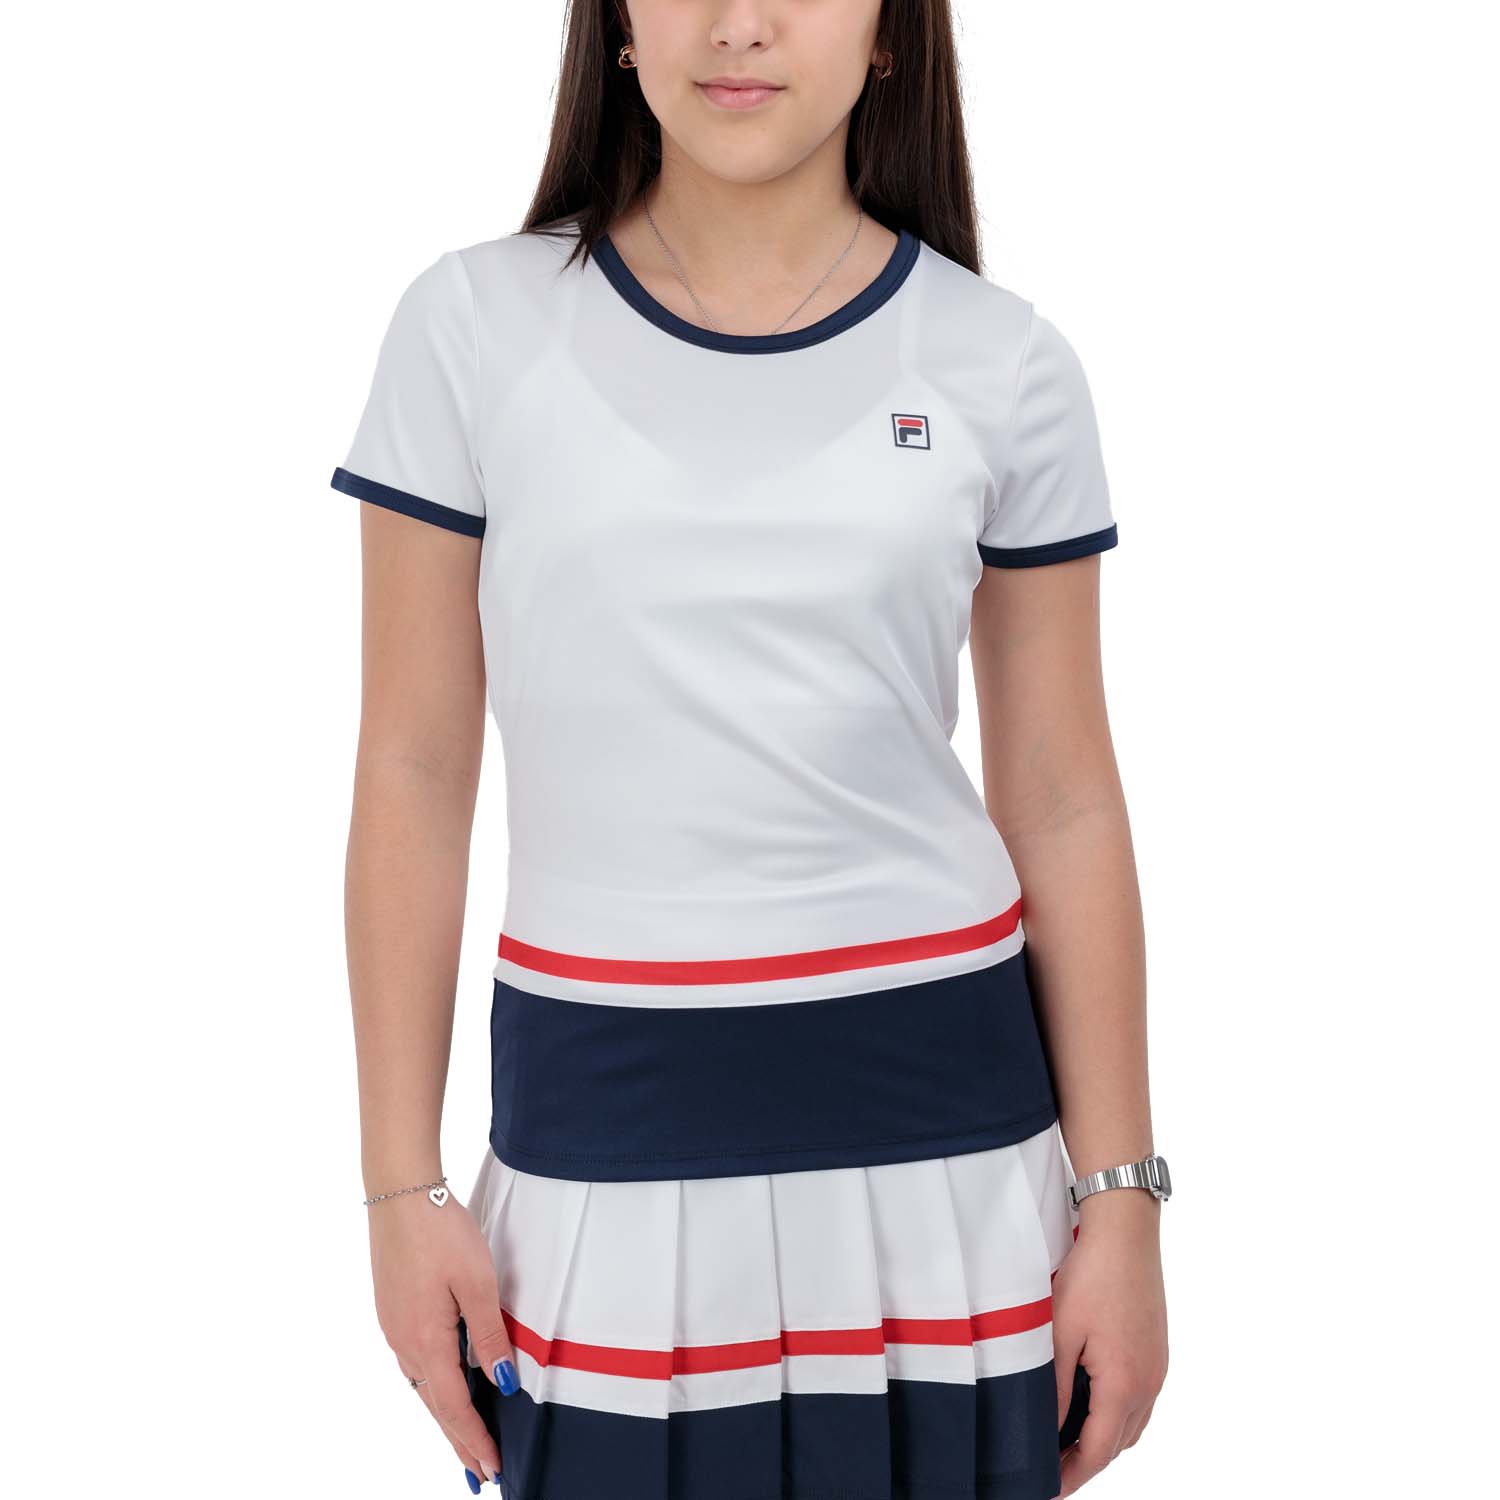 Fila Elisabeth Camiseta Niña - White/Navy